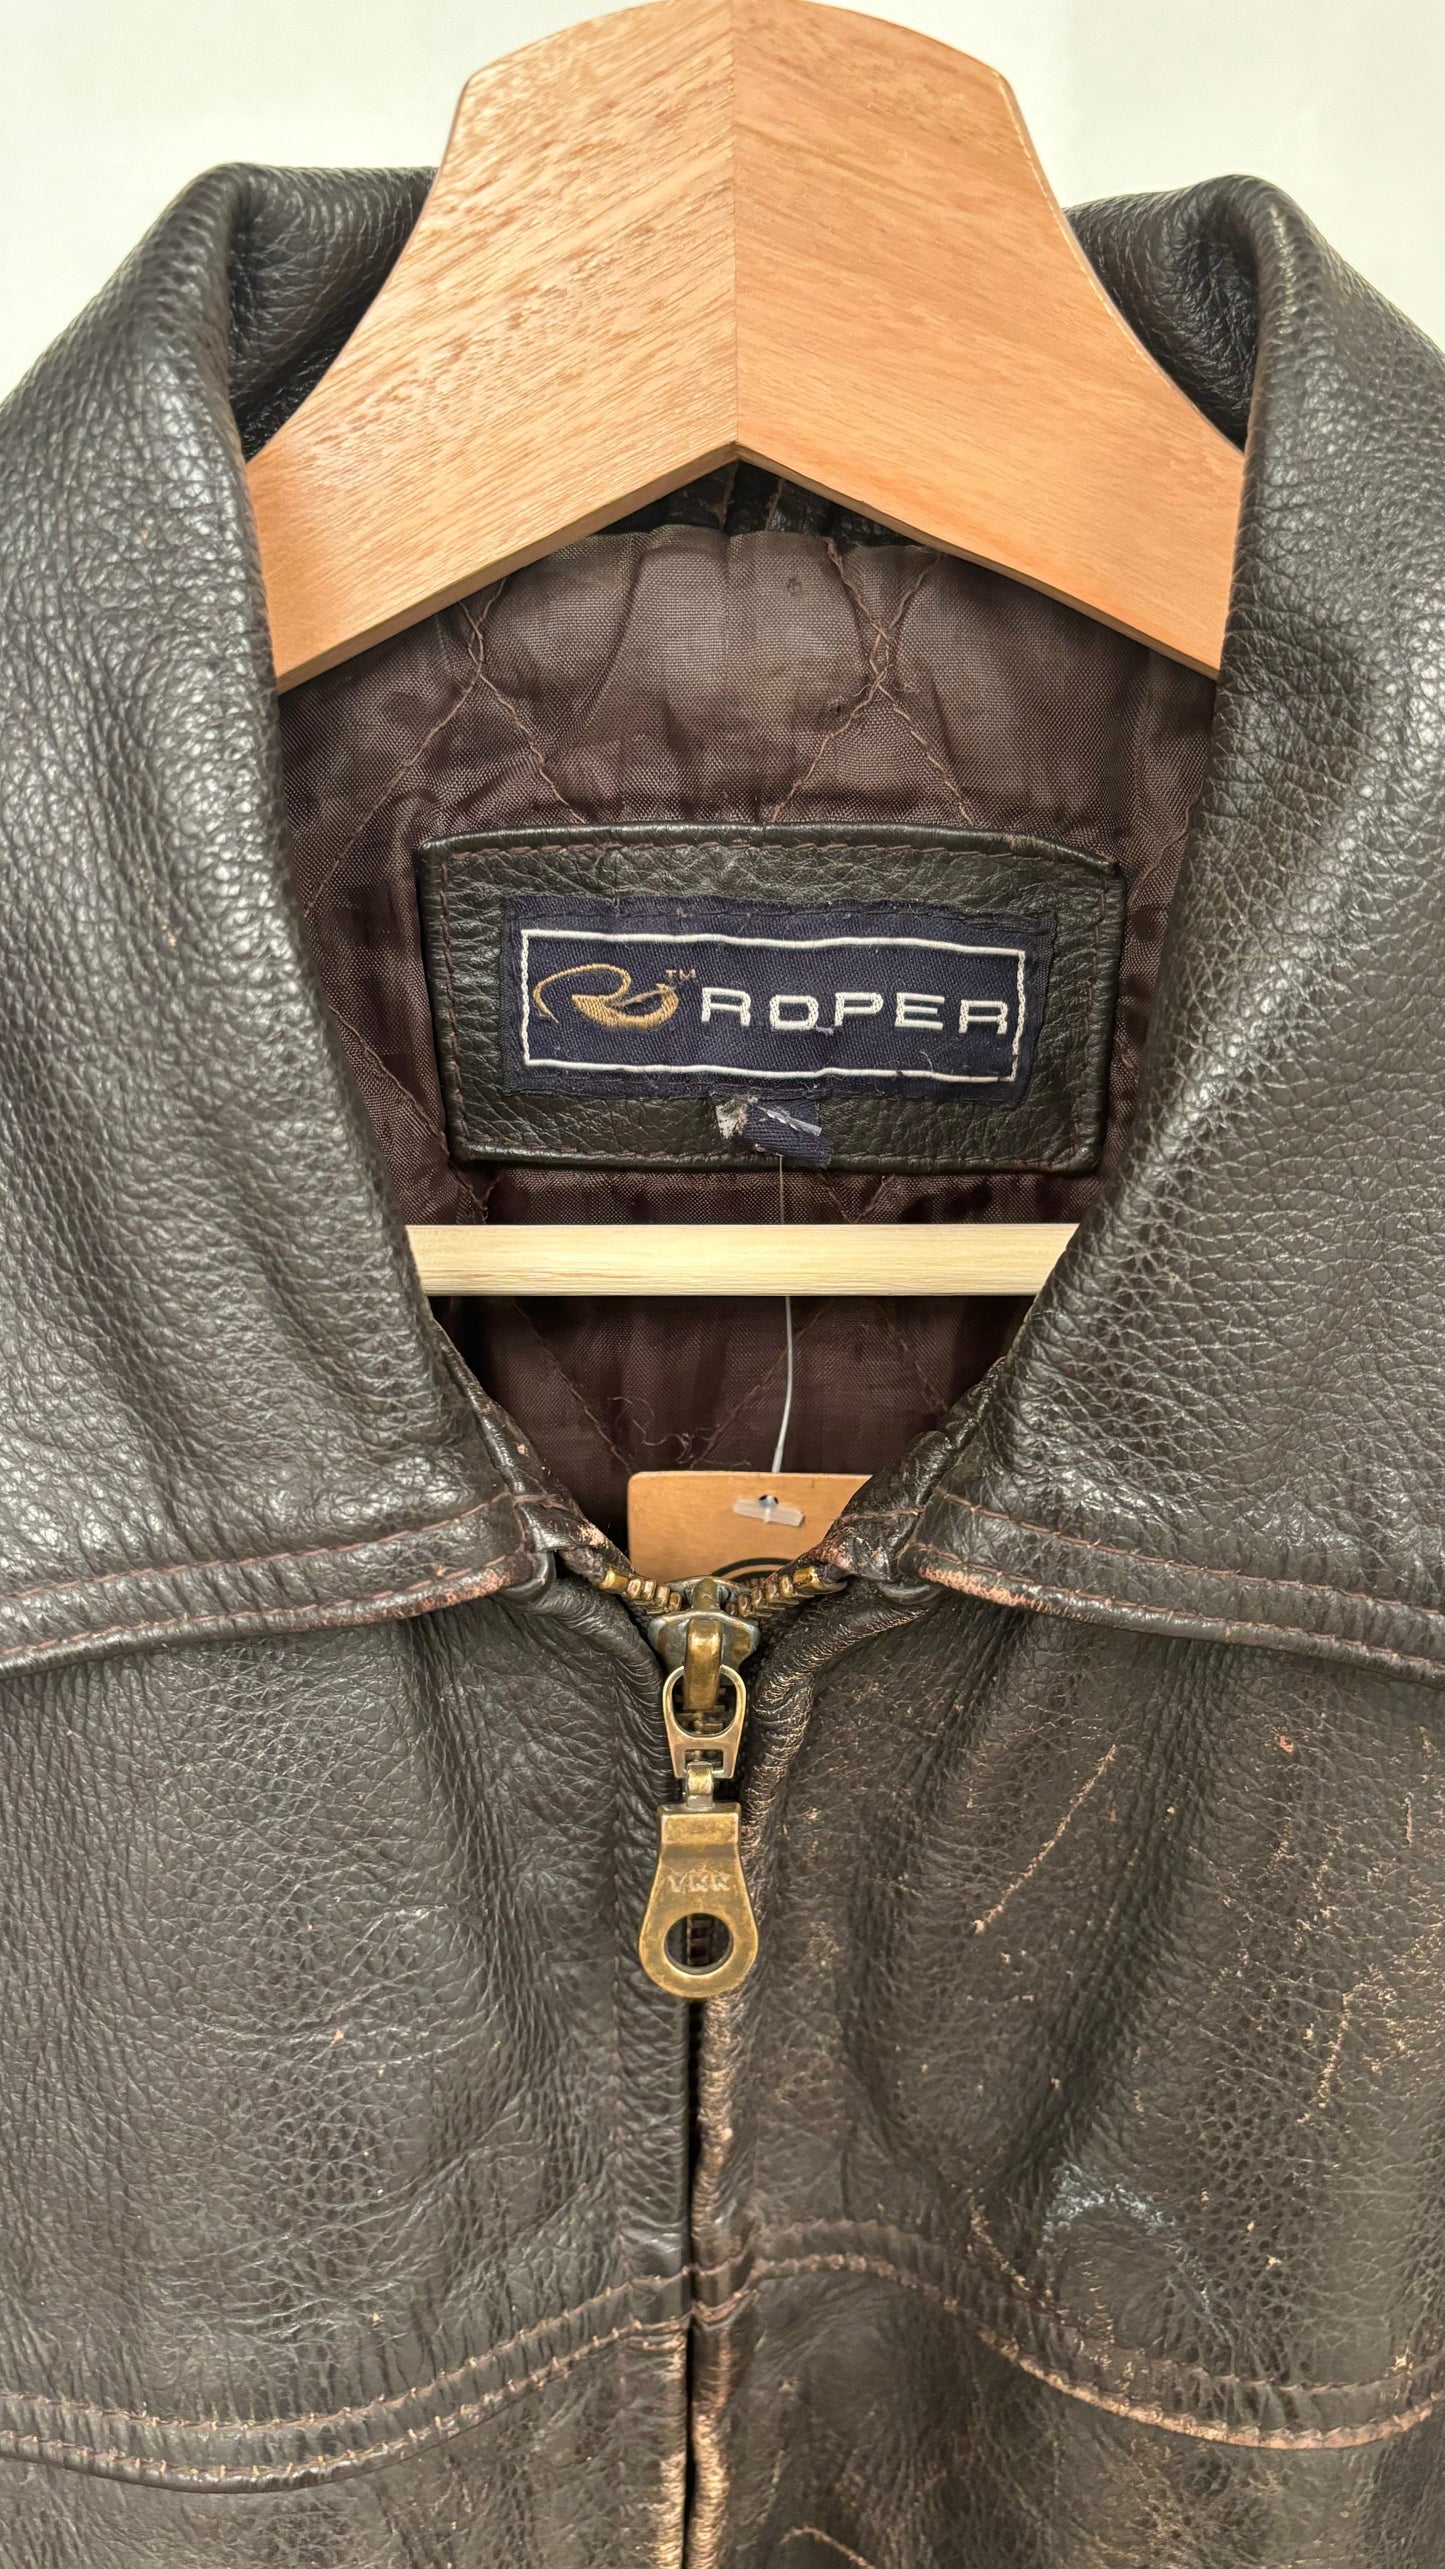 Roper Leather Jacket